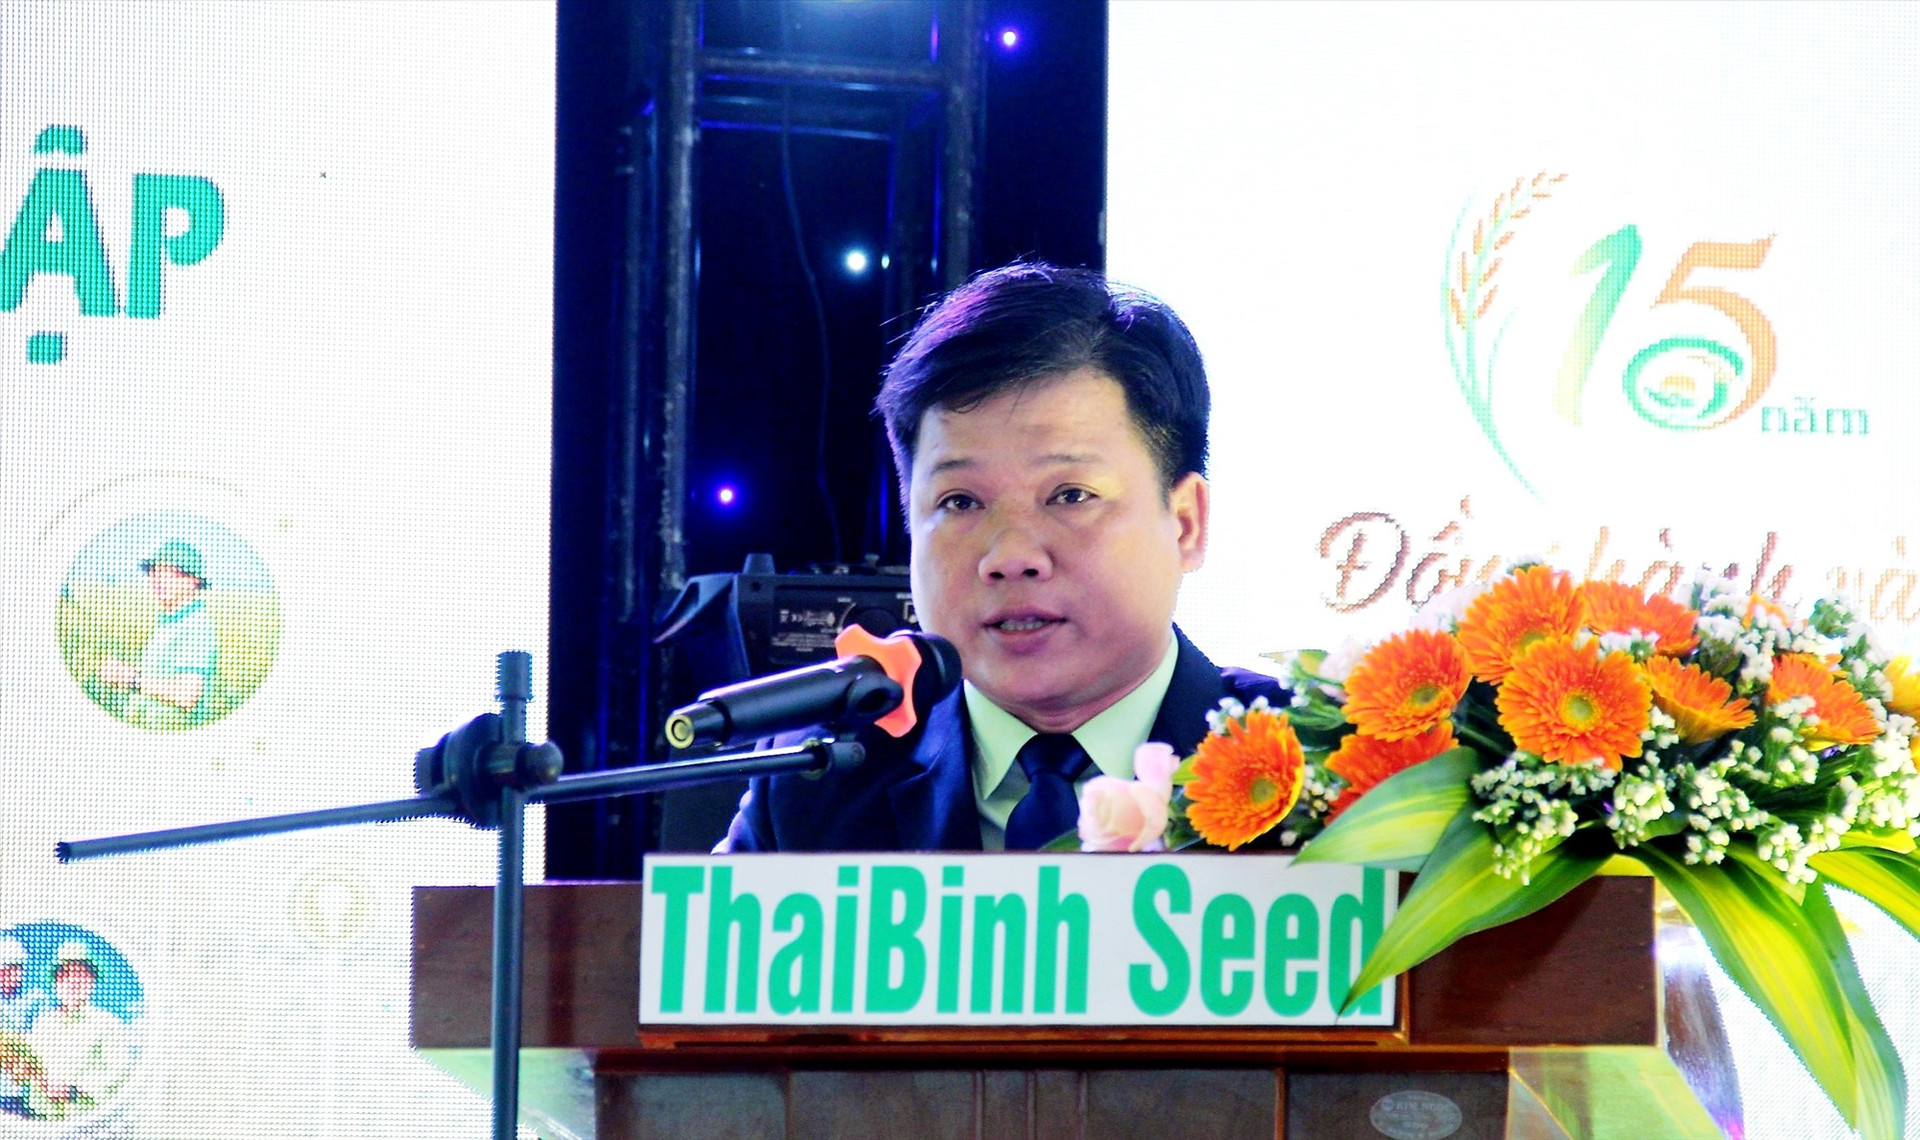 Ông Triệu Tấn Phú - Giám đốc Công ty TNHH ThaiBinh Seed miền Trung – Tây Nguyên phát biểu tại lễ kỷ niệm.   Ảnh: M.N